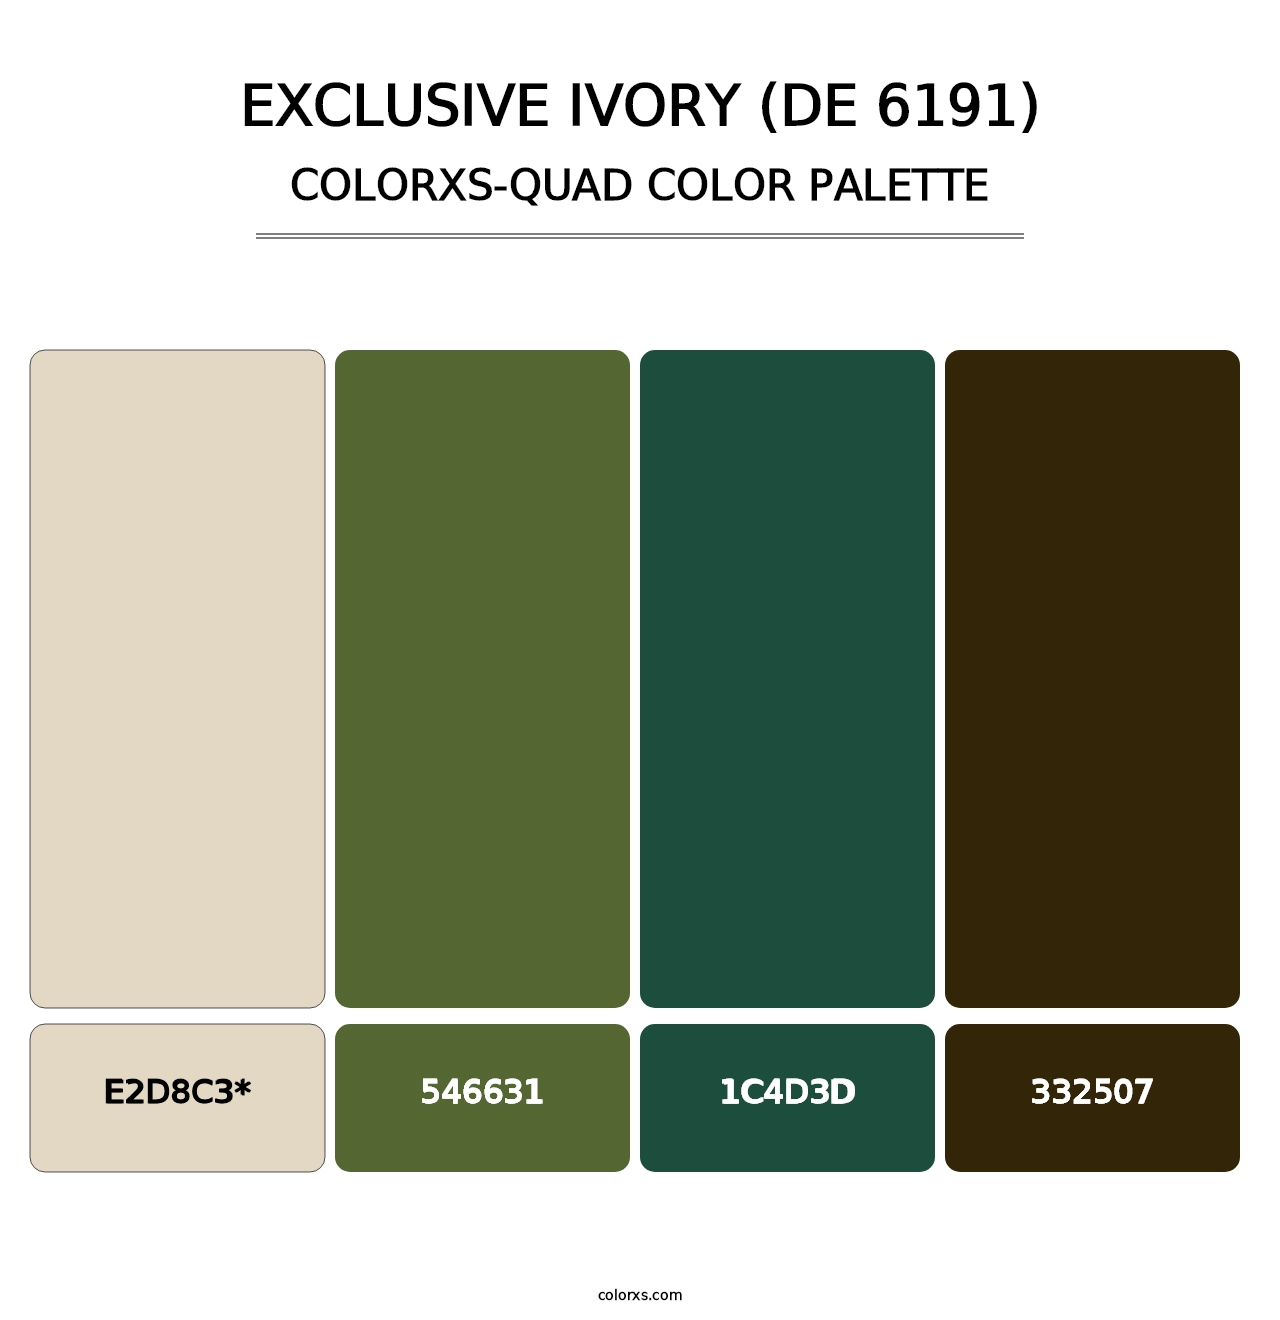 Exclusive Ivory (DE 6191) - Colorxs Quad Palette